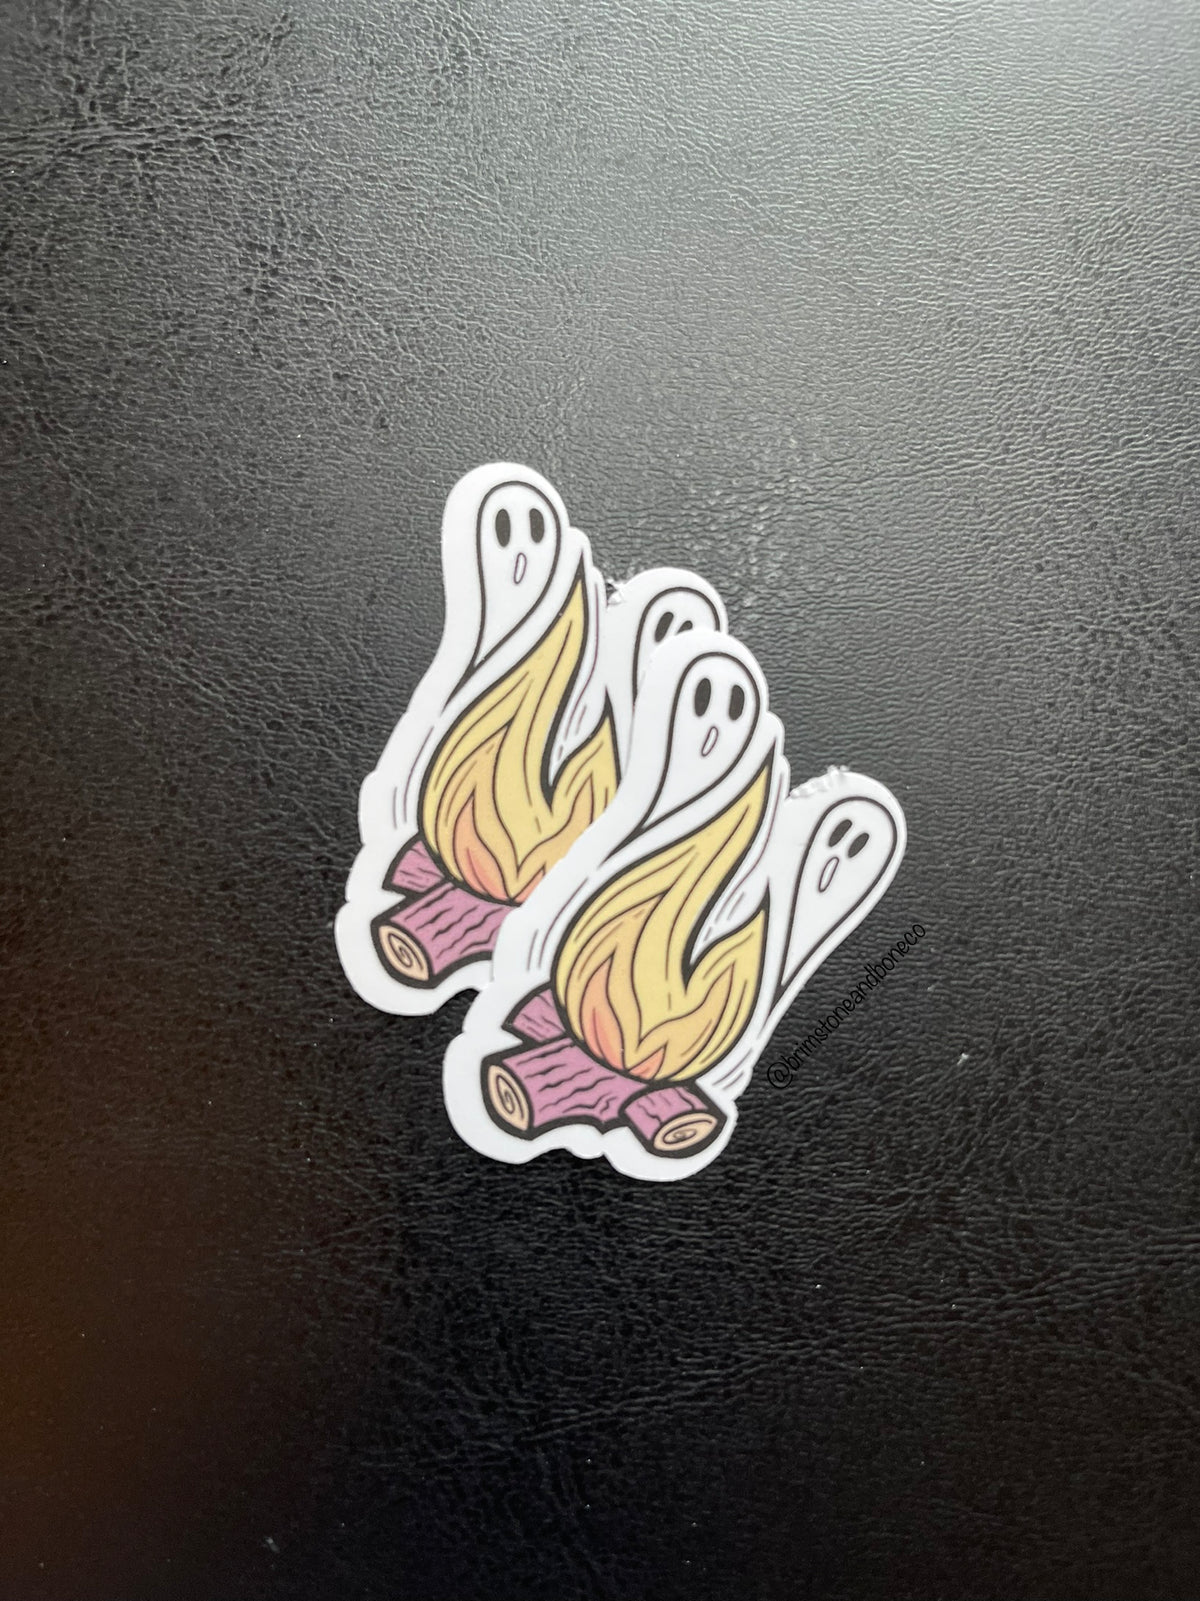 Campfire Ghosts Vinyl Sticker